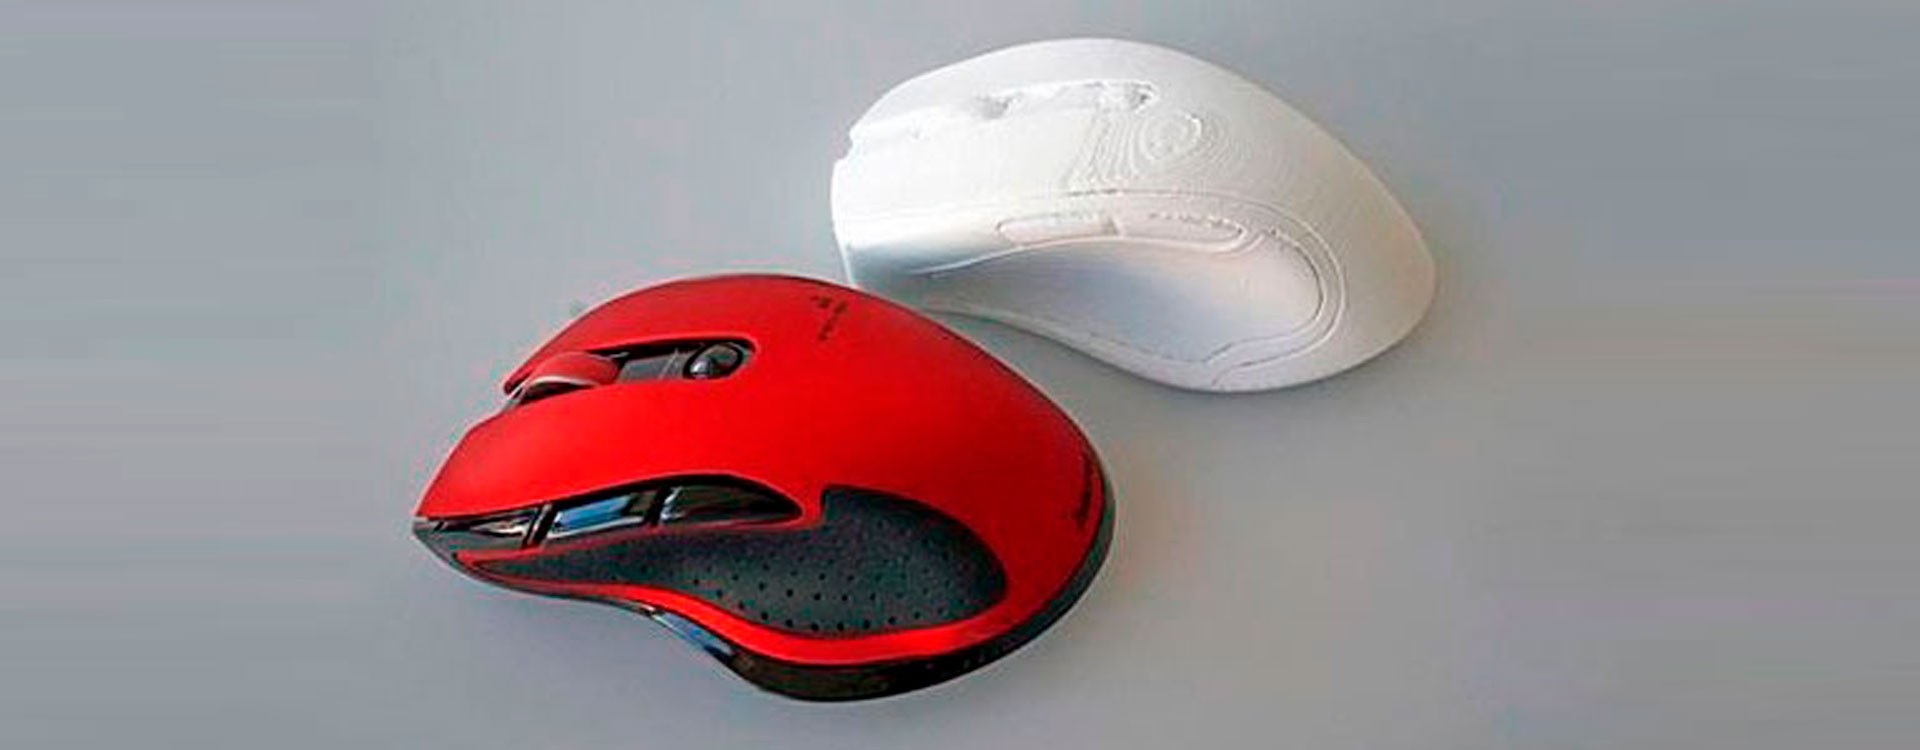 Електронний гігант Хама створює комп'ютерні миші та інноваційні аксесуари за допомогою 3D-друку